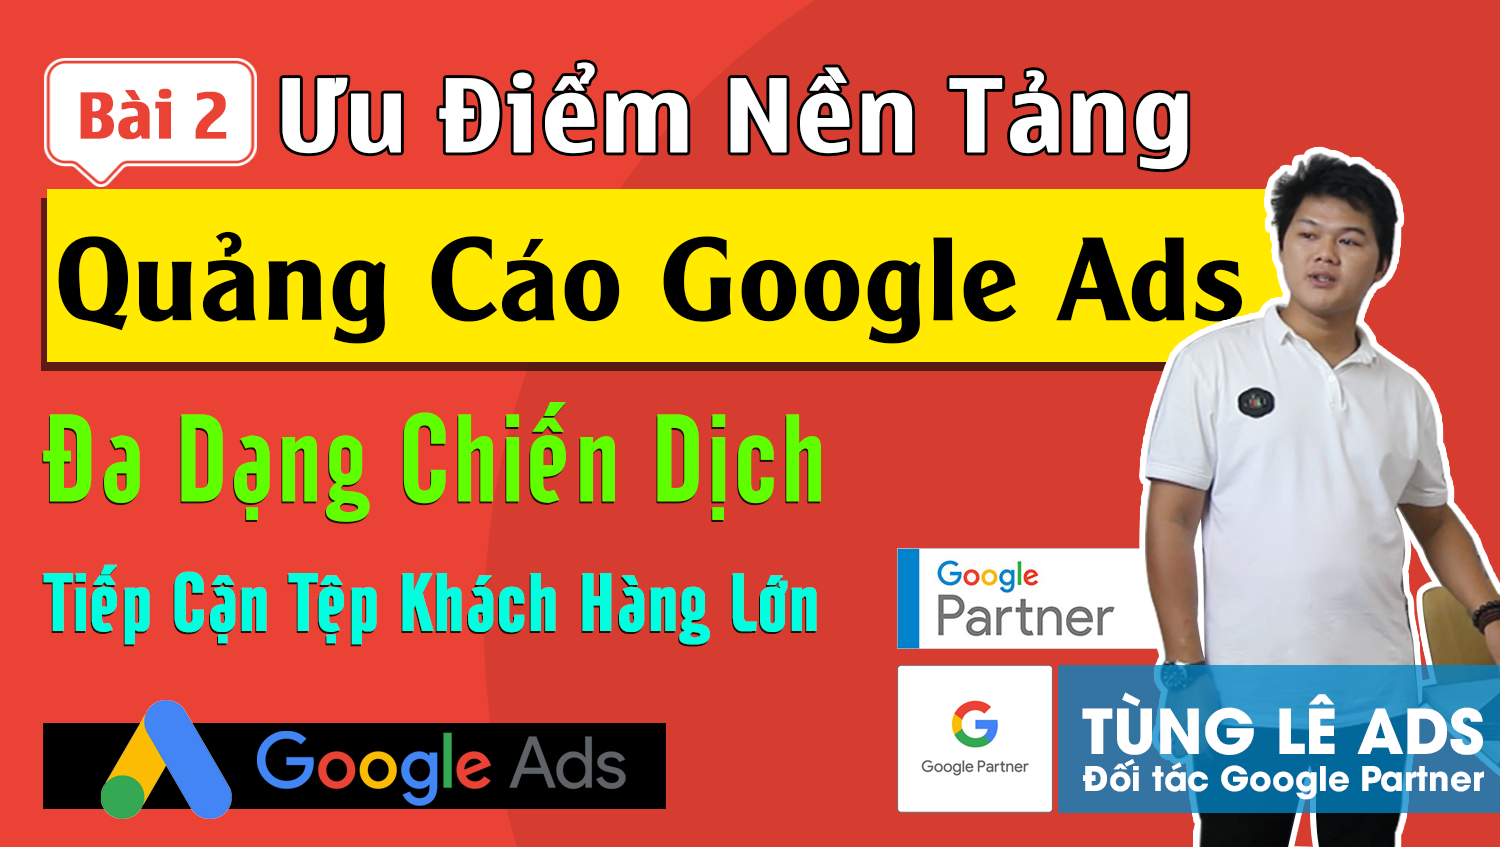 Ưu và nhược điểm quảng cáo Google Ads so với các nền tảng khác #2